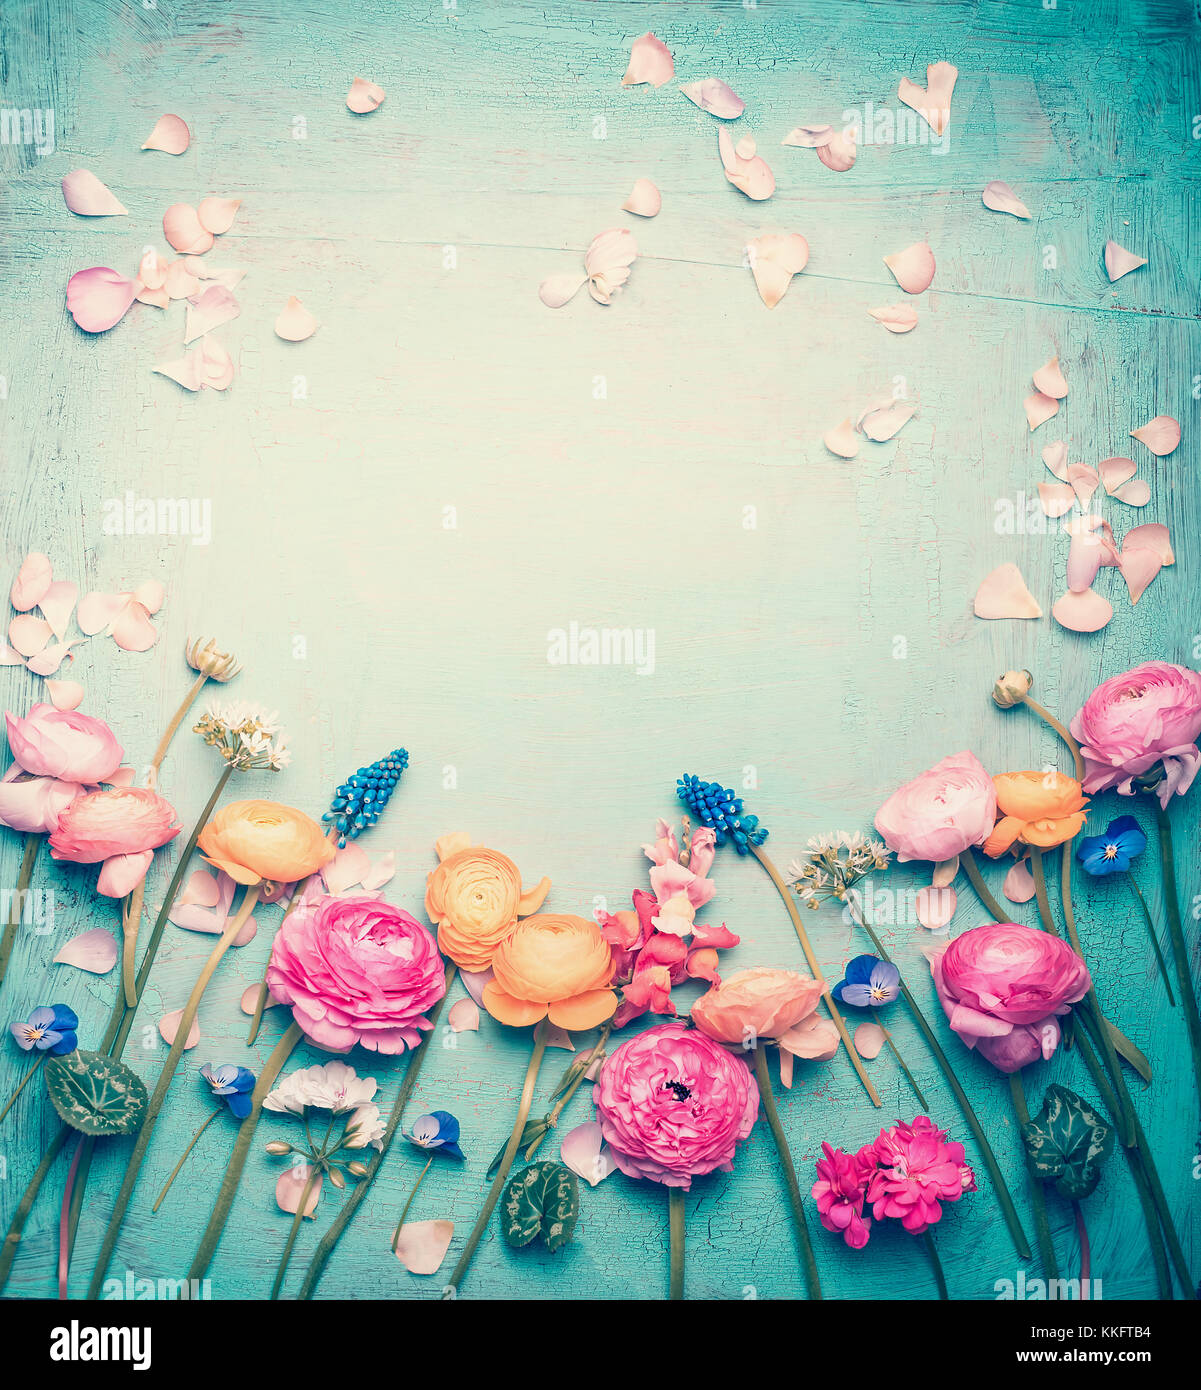 Marco floral con preciosas flores y pétalos en tonos pastel retro vintage  fondo turquesa, vista superior Fotografía de stock - Alamy